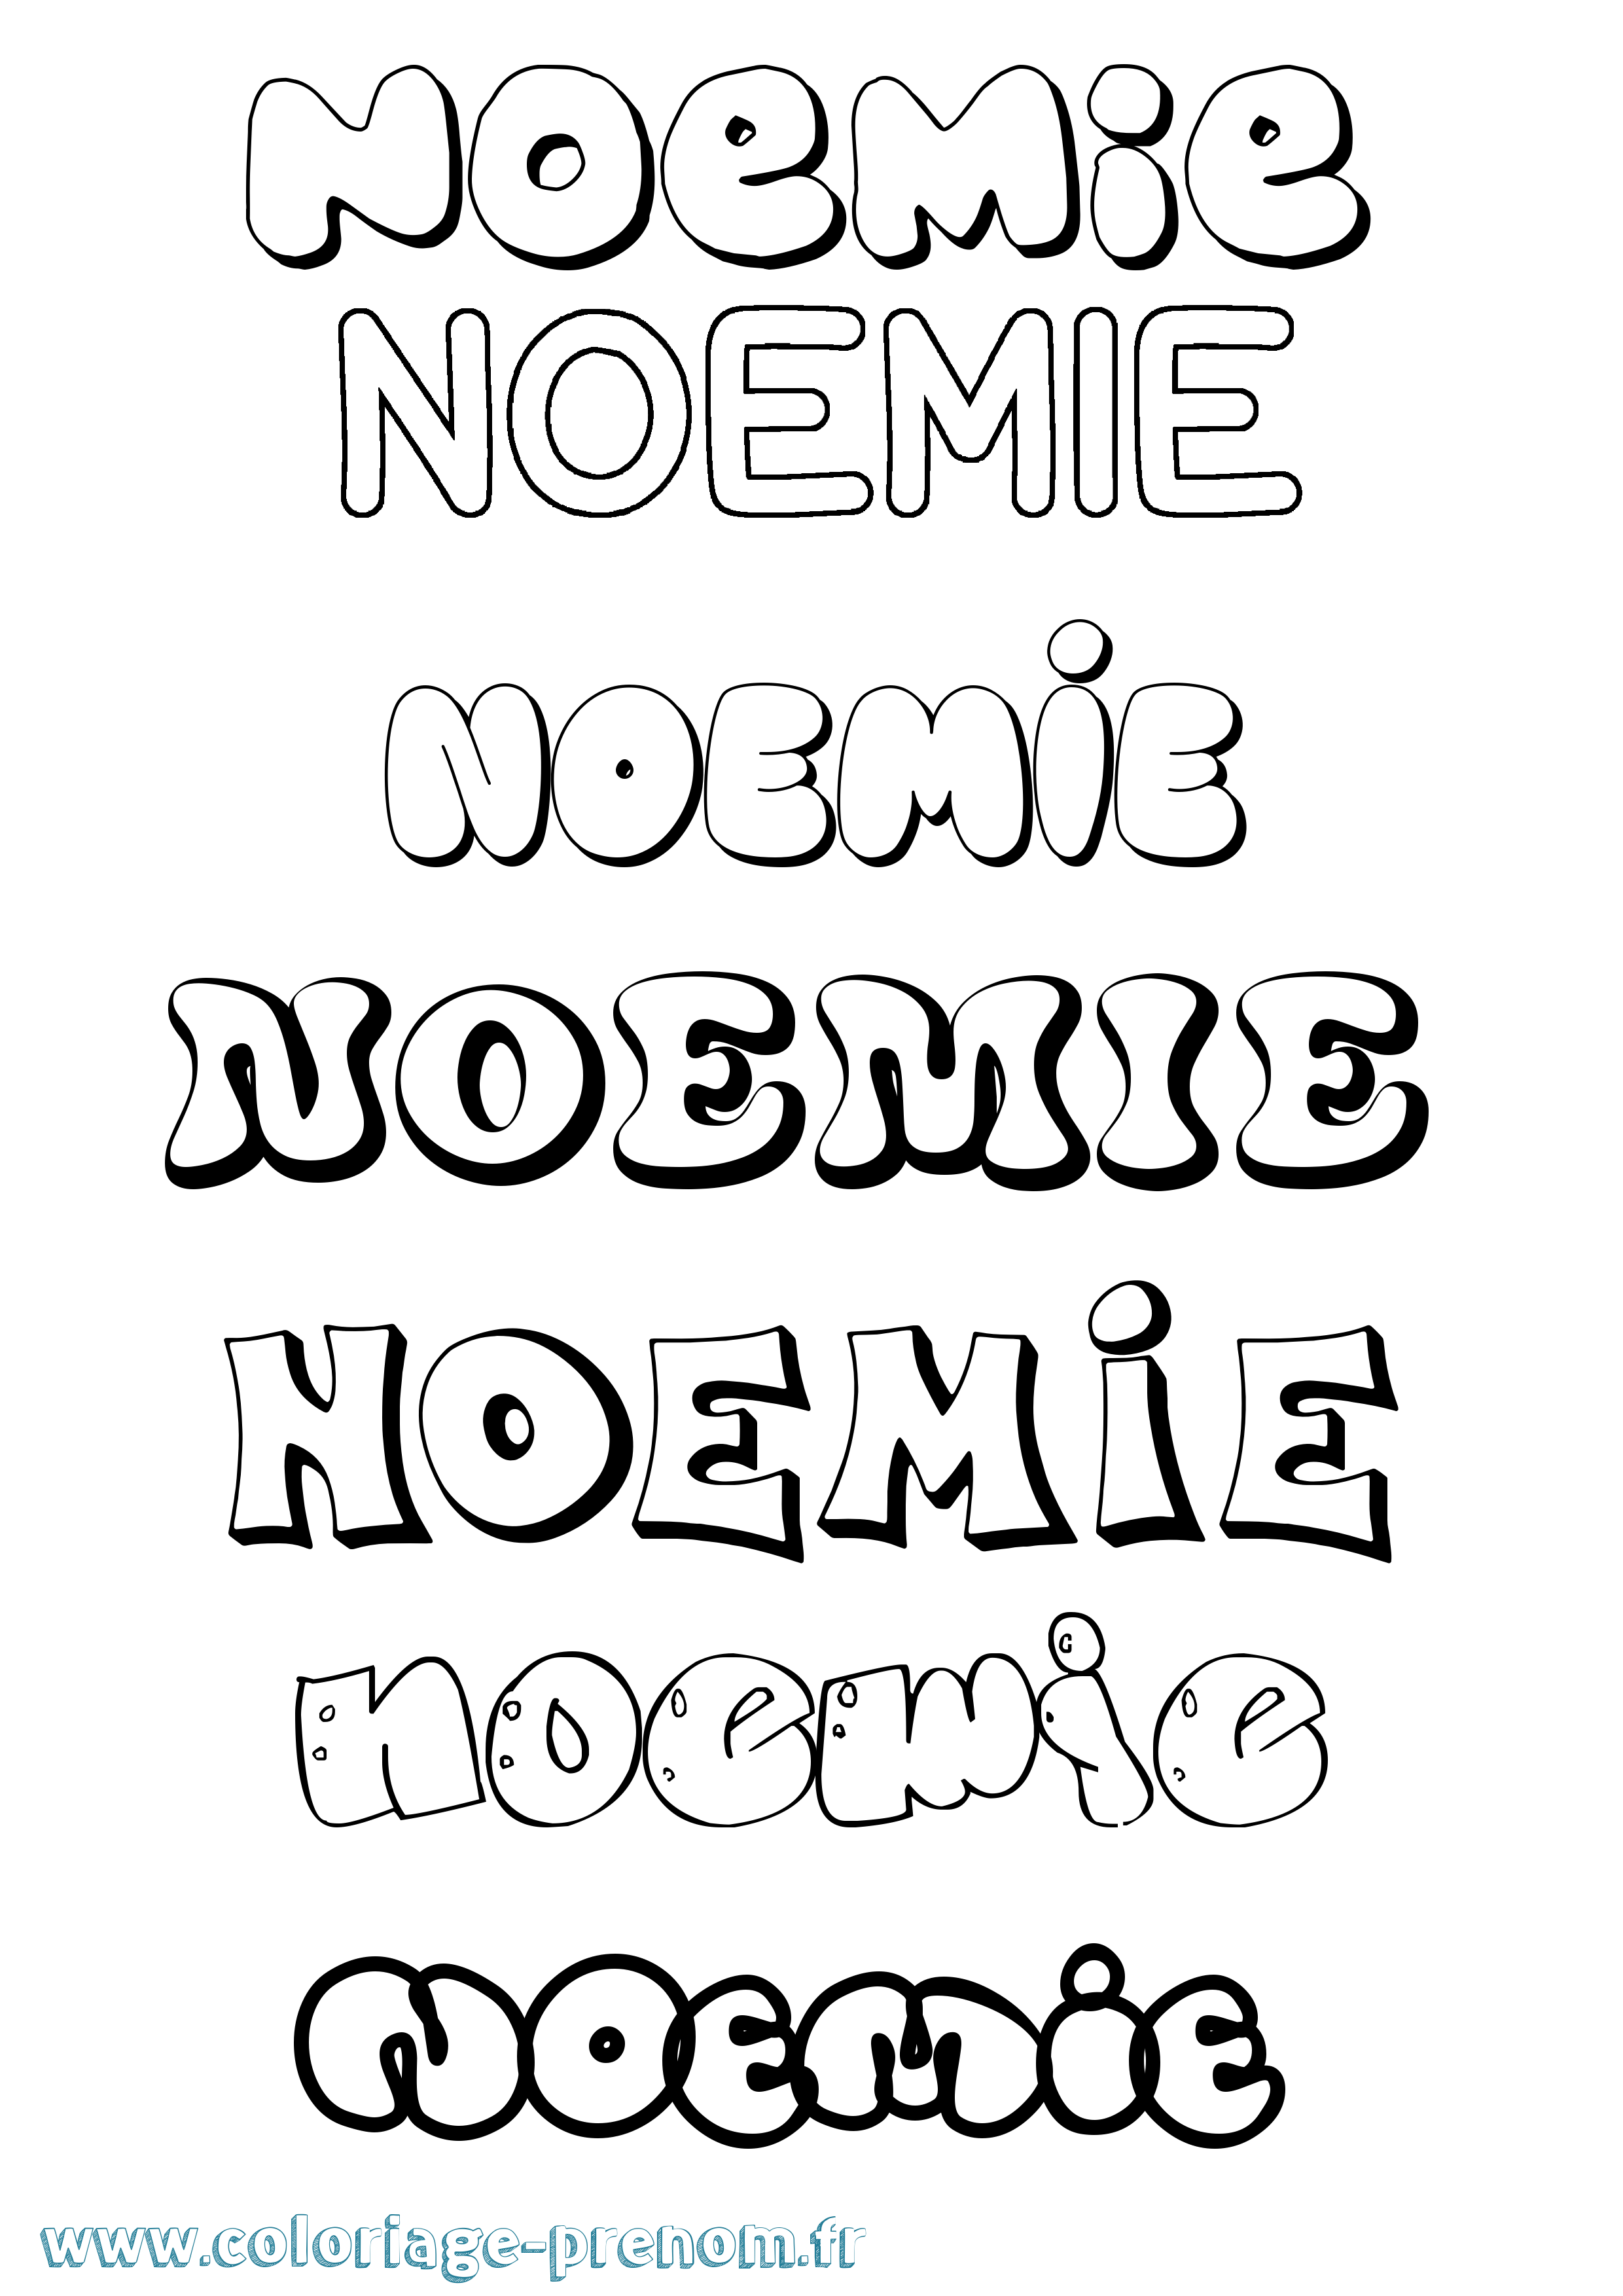 Coloriage prénom Noemie Bubble